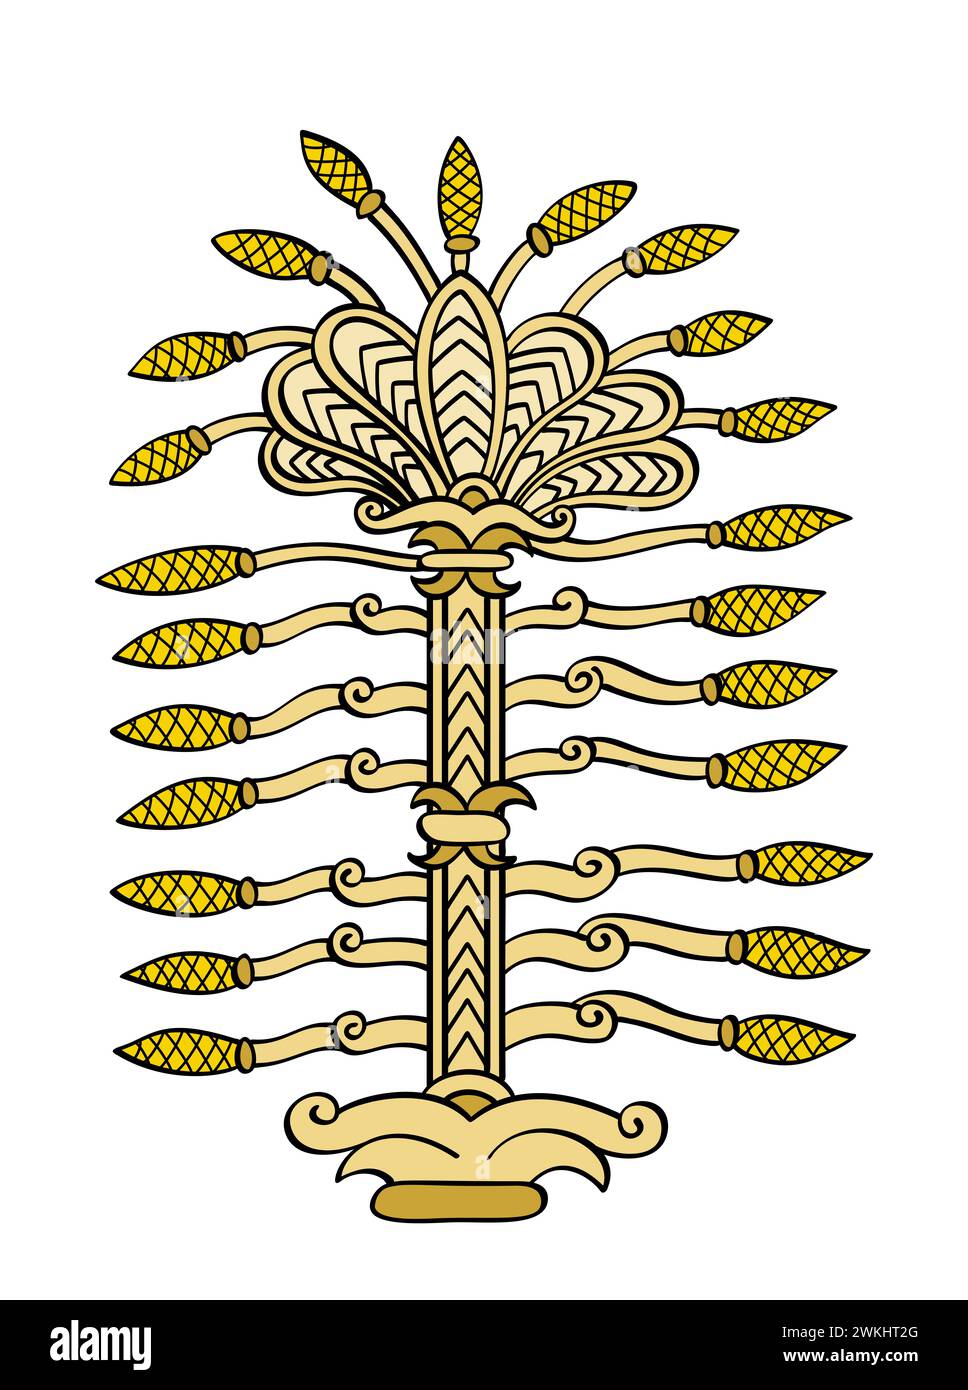 Albero della vita, simbolo di un albero sacro nell'antica Mesopotamia, come era raffigurato su un pettorale del re Ashurbanipal. Importante simbolo religioso. Foto Stock